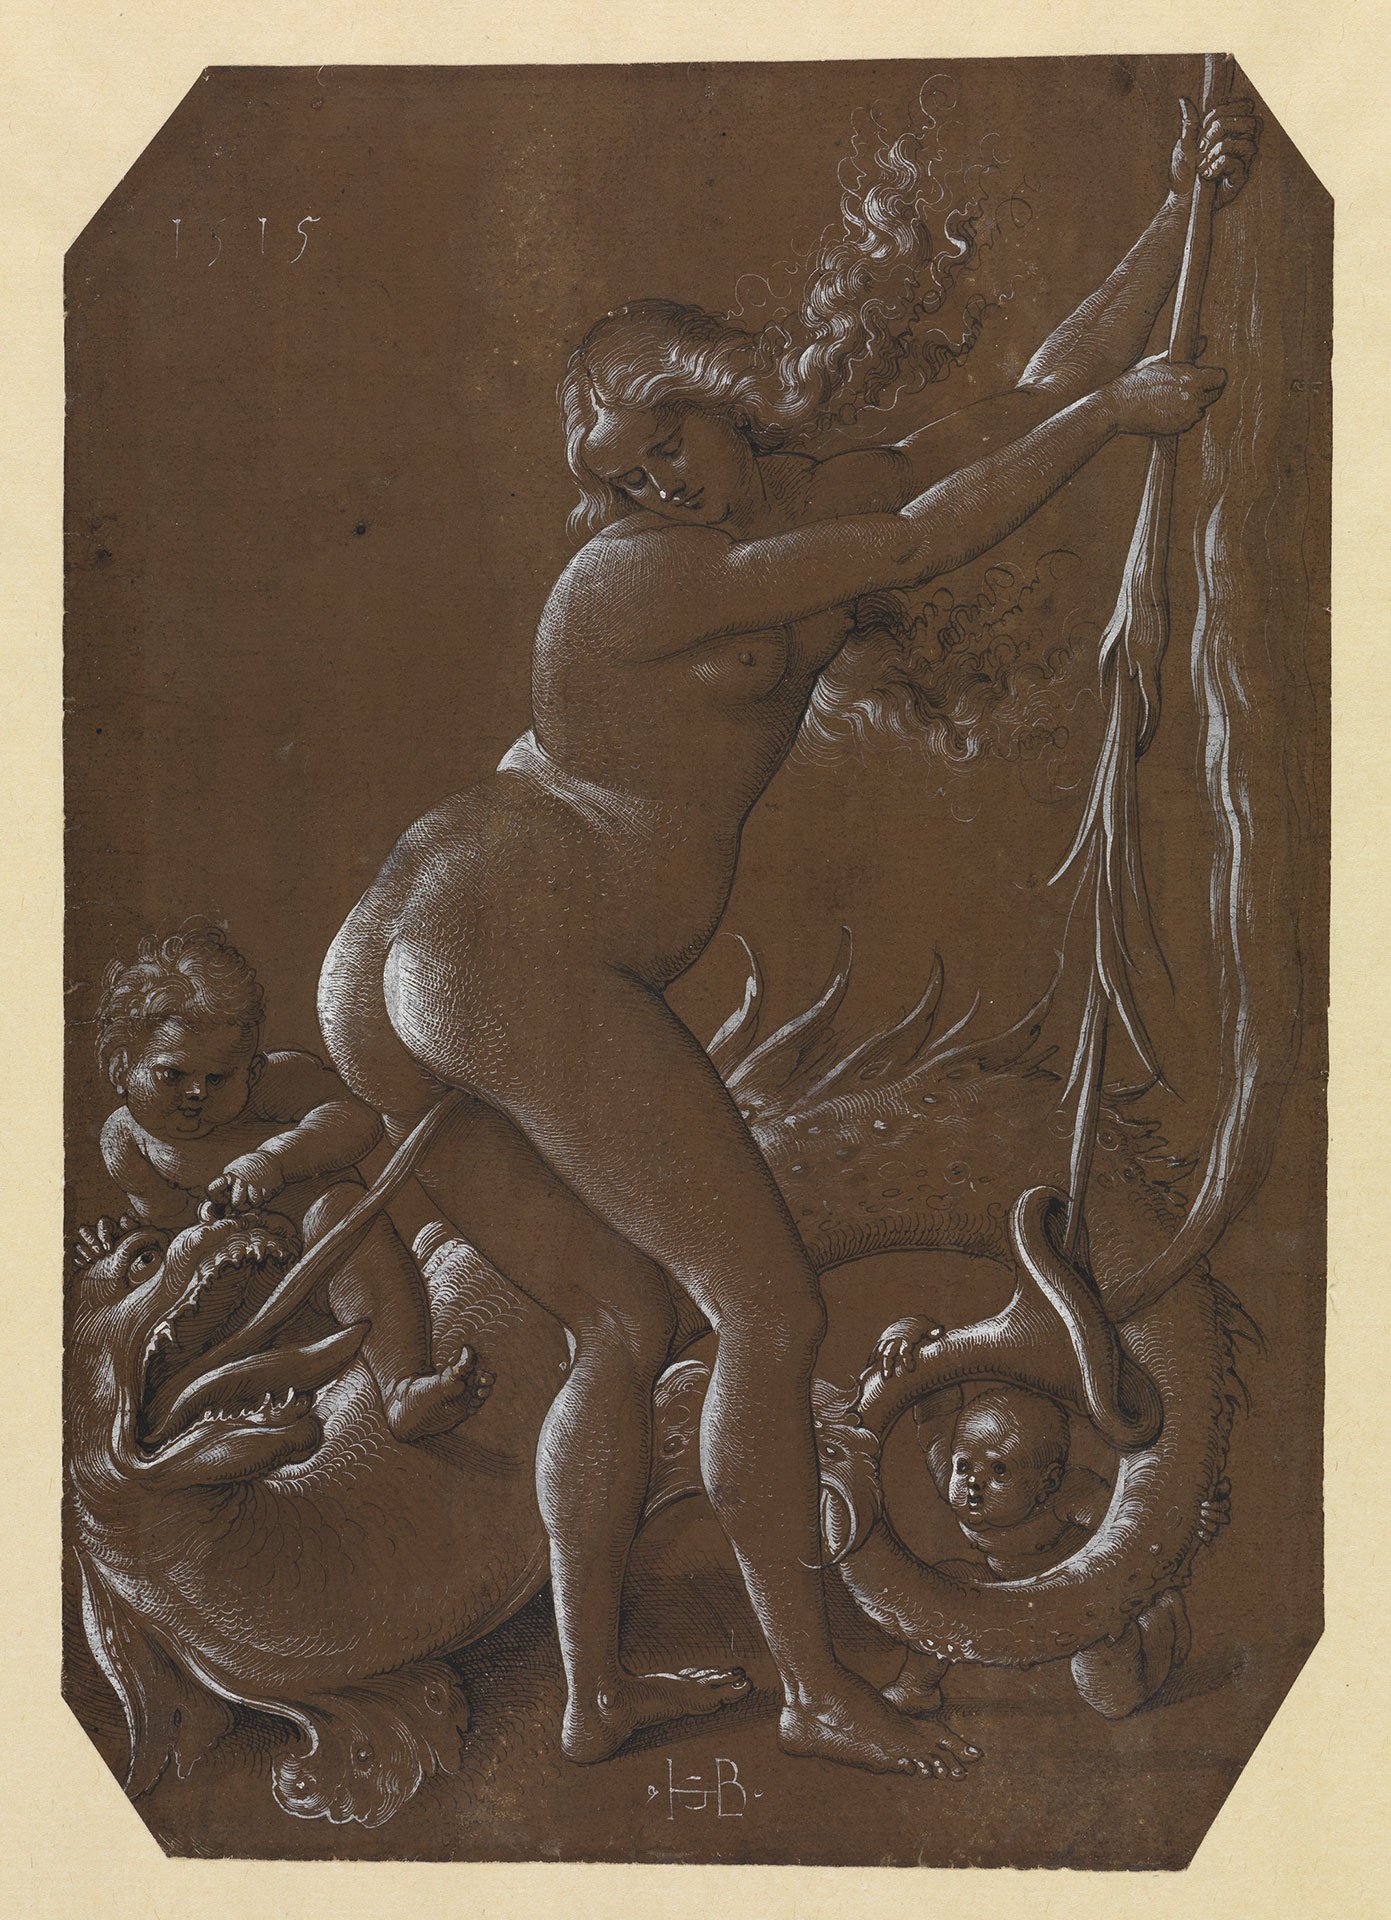 Abbildung des Werks ": Nackte junge Hexe und fischgestaltiger Drache“ des Künstlers Hans Baldung Grien. Es zeigt eine nackte Frau, die von einem Drachen dessen Zunge in den After gesteckt bekommt.